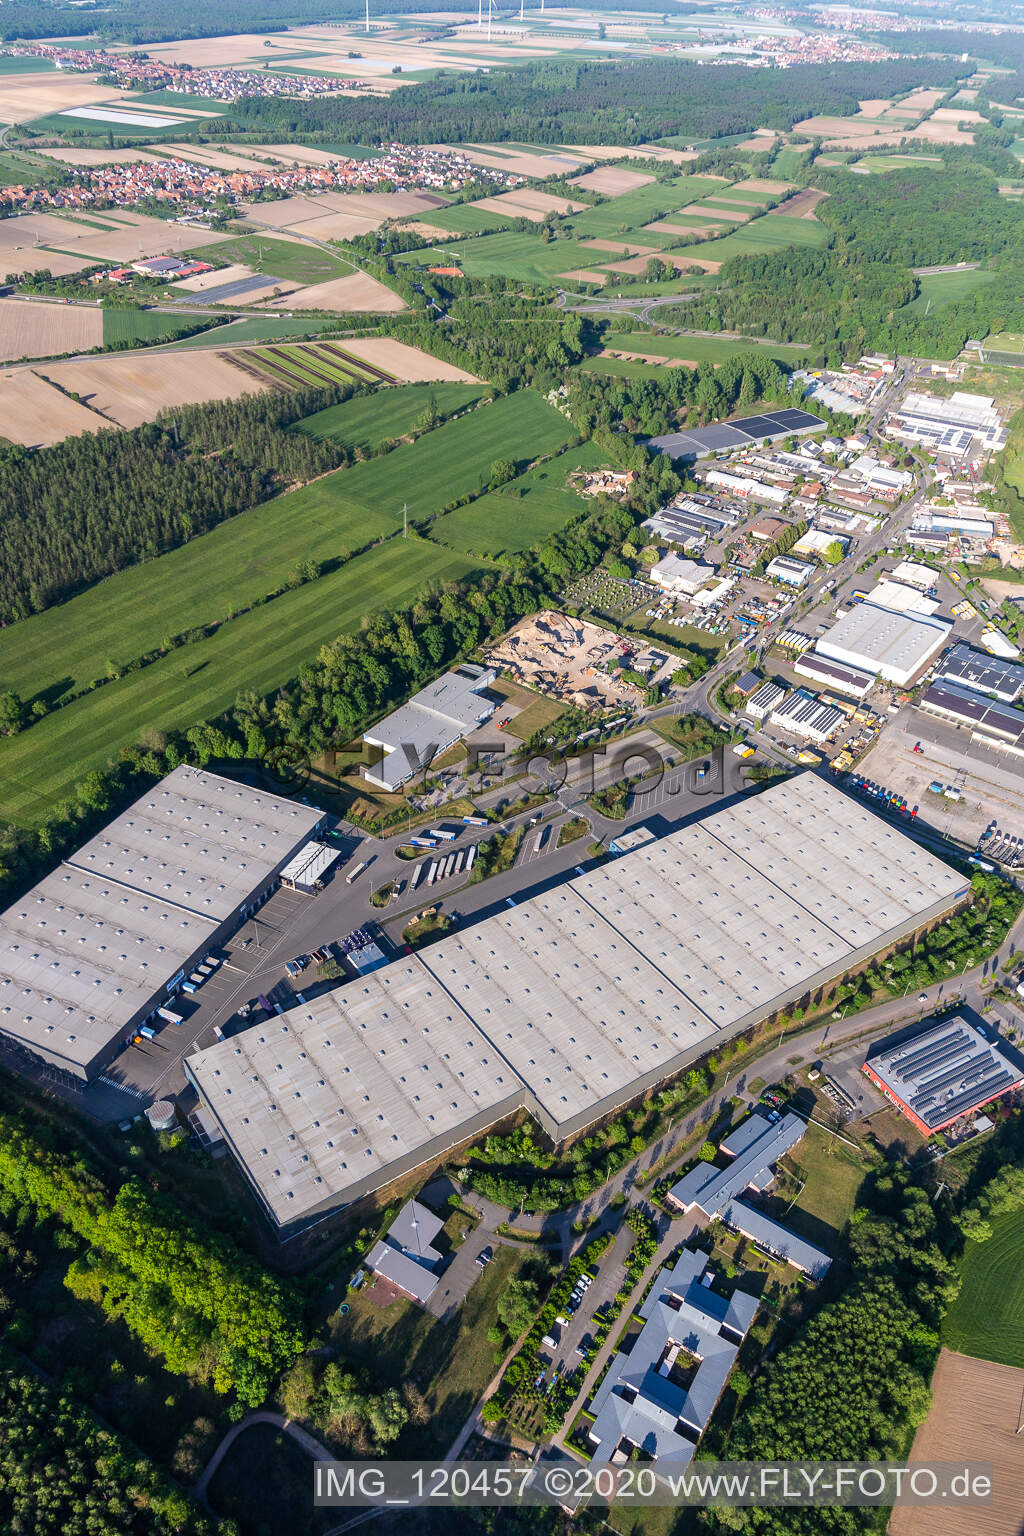 Vue aérienne de Zone industrielle et implantation d'entreprise à Horst avec Friedrich random GmbH & Co. KG Internationale Spedition à le quartier Minderslachen in Kandel dans le département Rhénanie-Palatinat, Allemagne